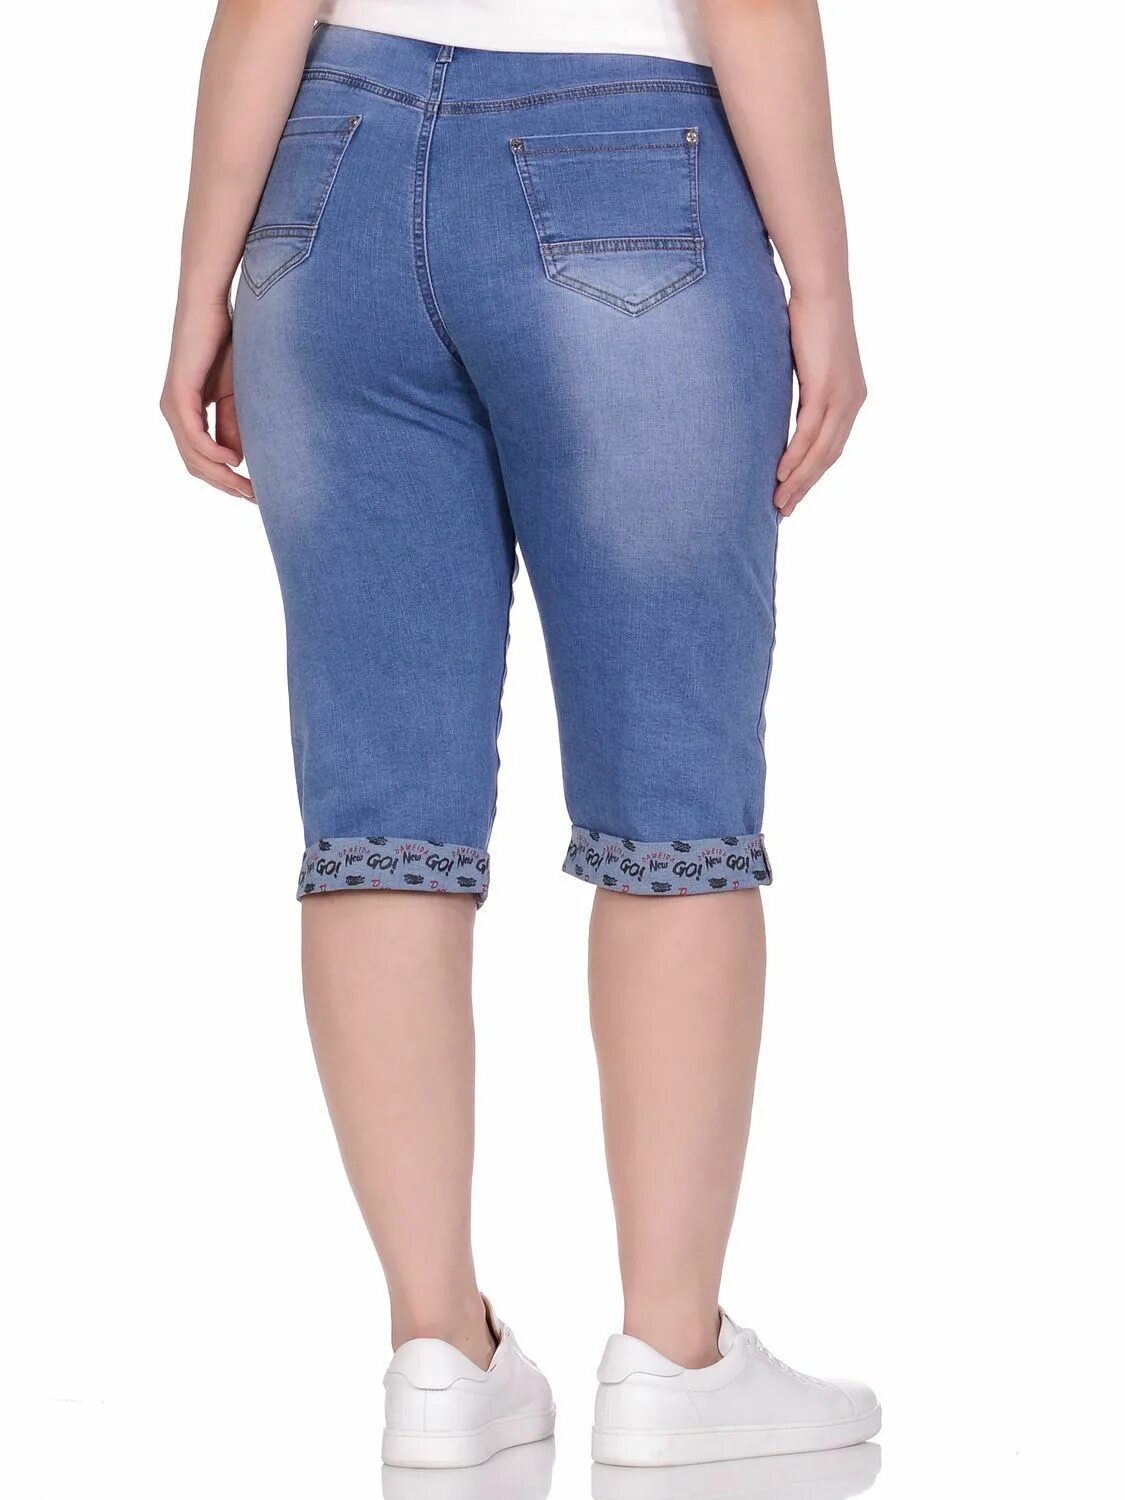 Озон бриджи большого размера женские. Gloria Jeans бриджи женские джинсовые стретч. Модные джинсовые бриджи. Бриджи с завышенной талией. Бриджи джинсовые женские стрейч.